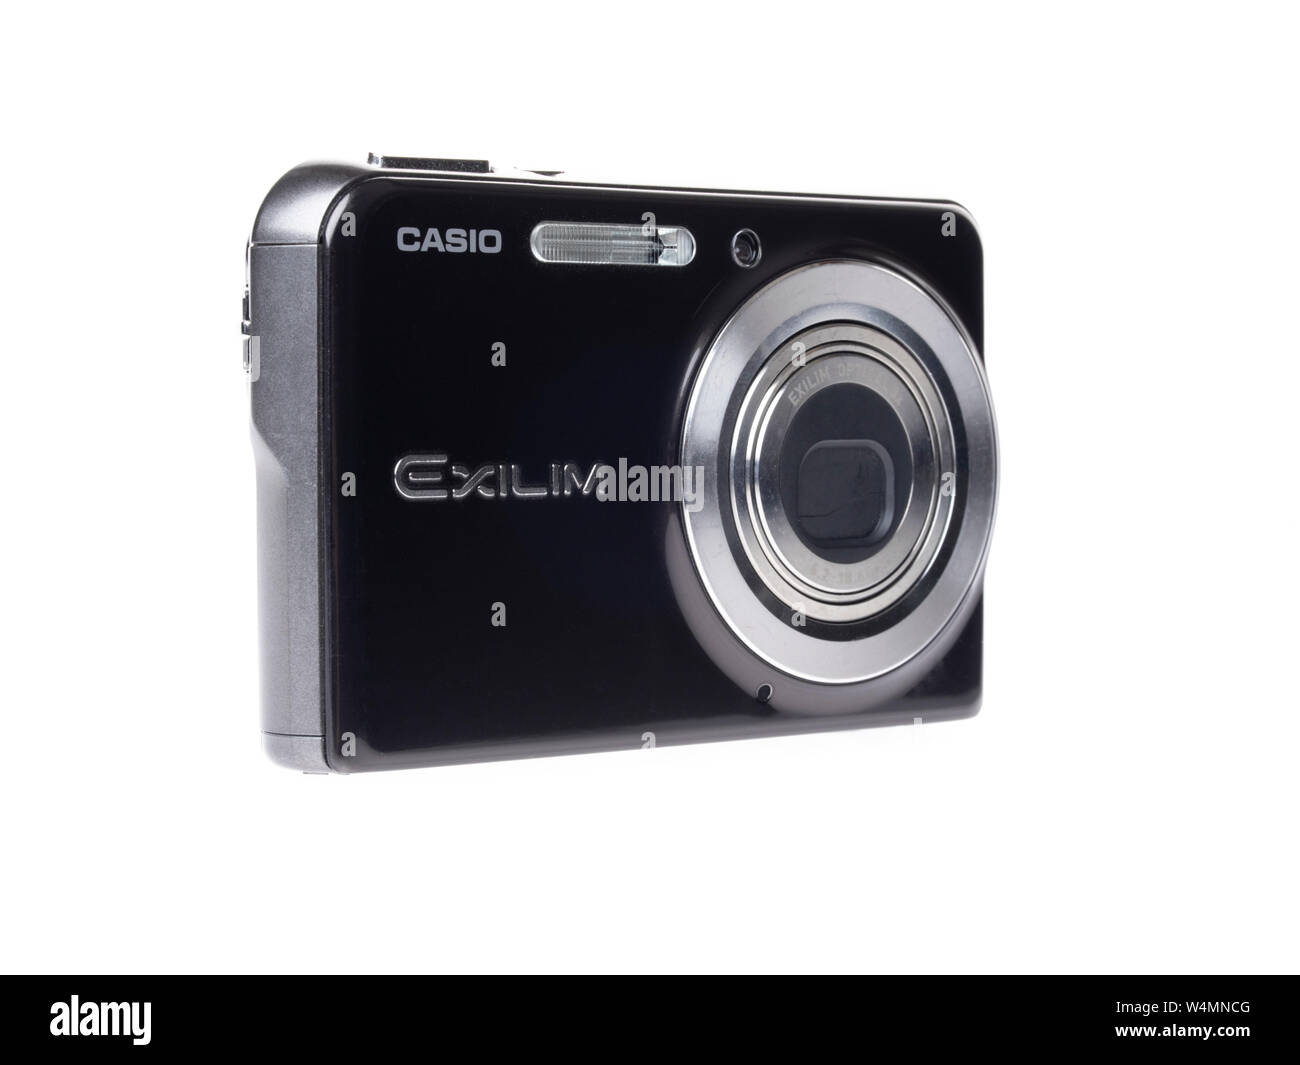 Casio exilim Banque de photographies et d'images à haute résolution - Alamy